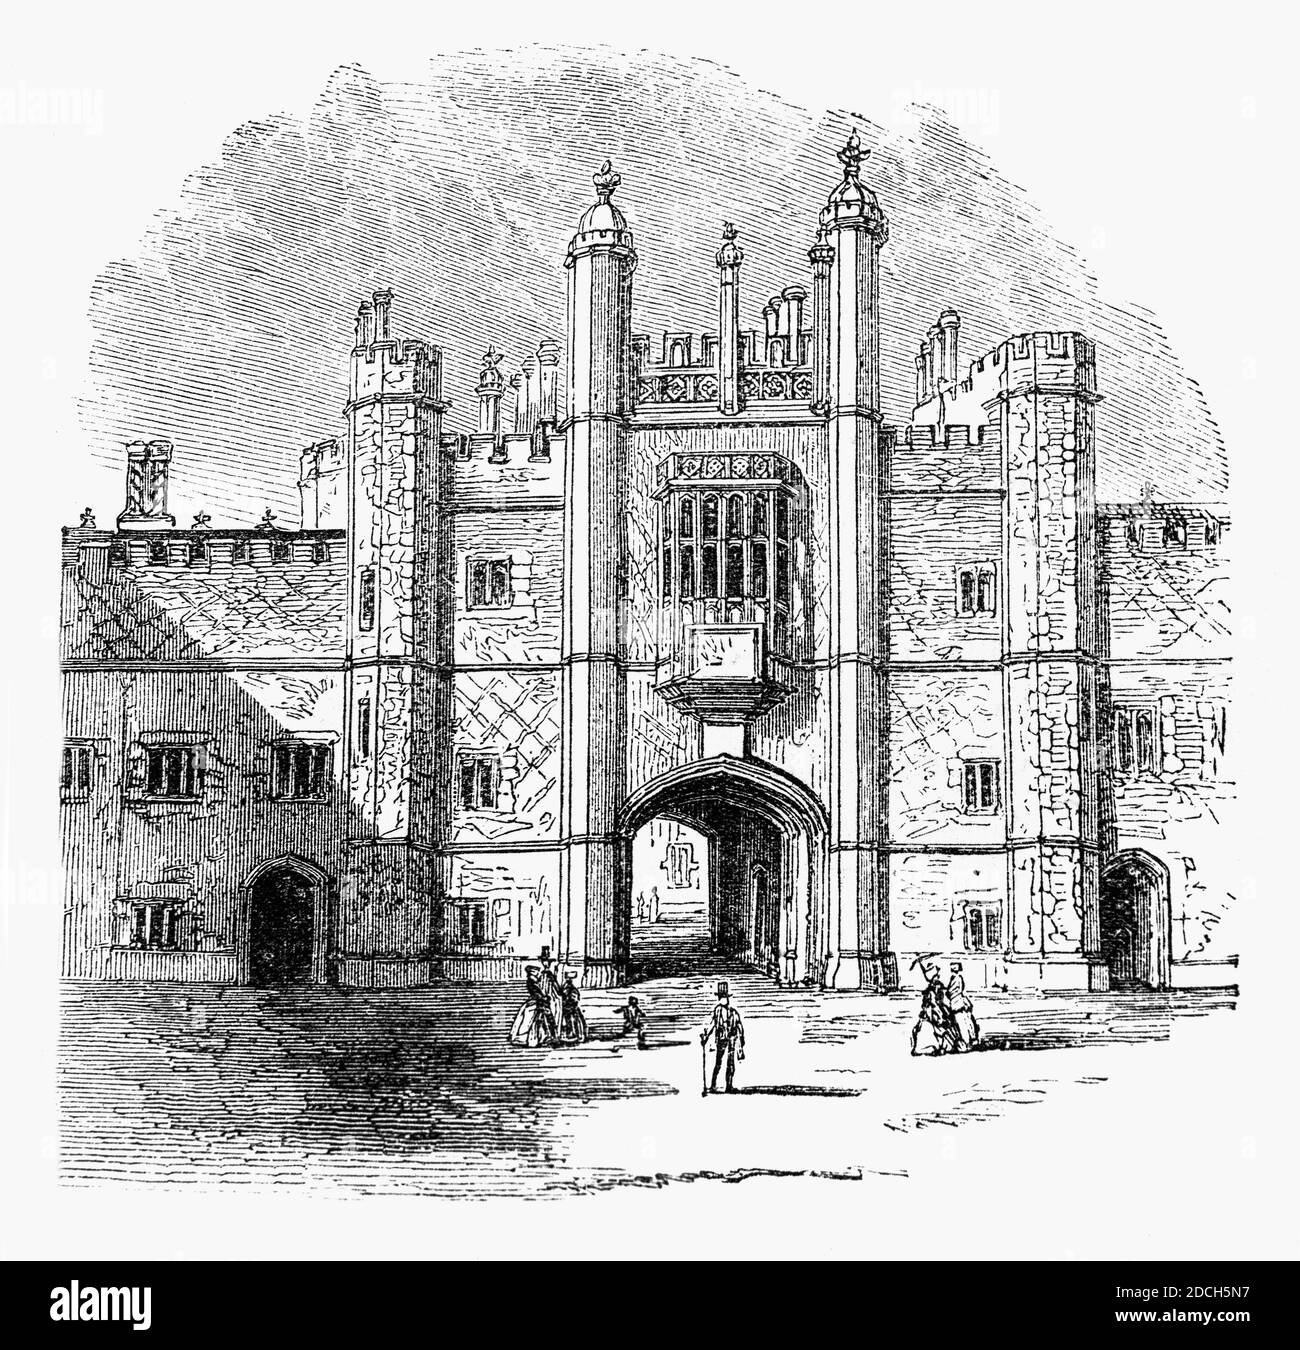 Une vue du XIXe siècle de la porte d'Eton College fondée en 1440 par le roi Henry VI Il s'agit d'une école d'internat indépendante de 13 à 18 pour les garçons de la paroisse d'Eton, près de Windsor, dans le Berkshire, en Angleterre. Banque D'Images